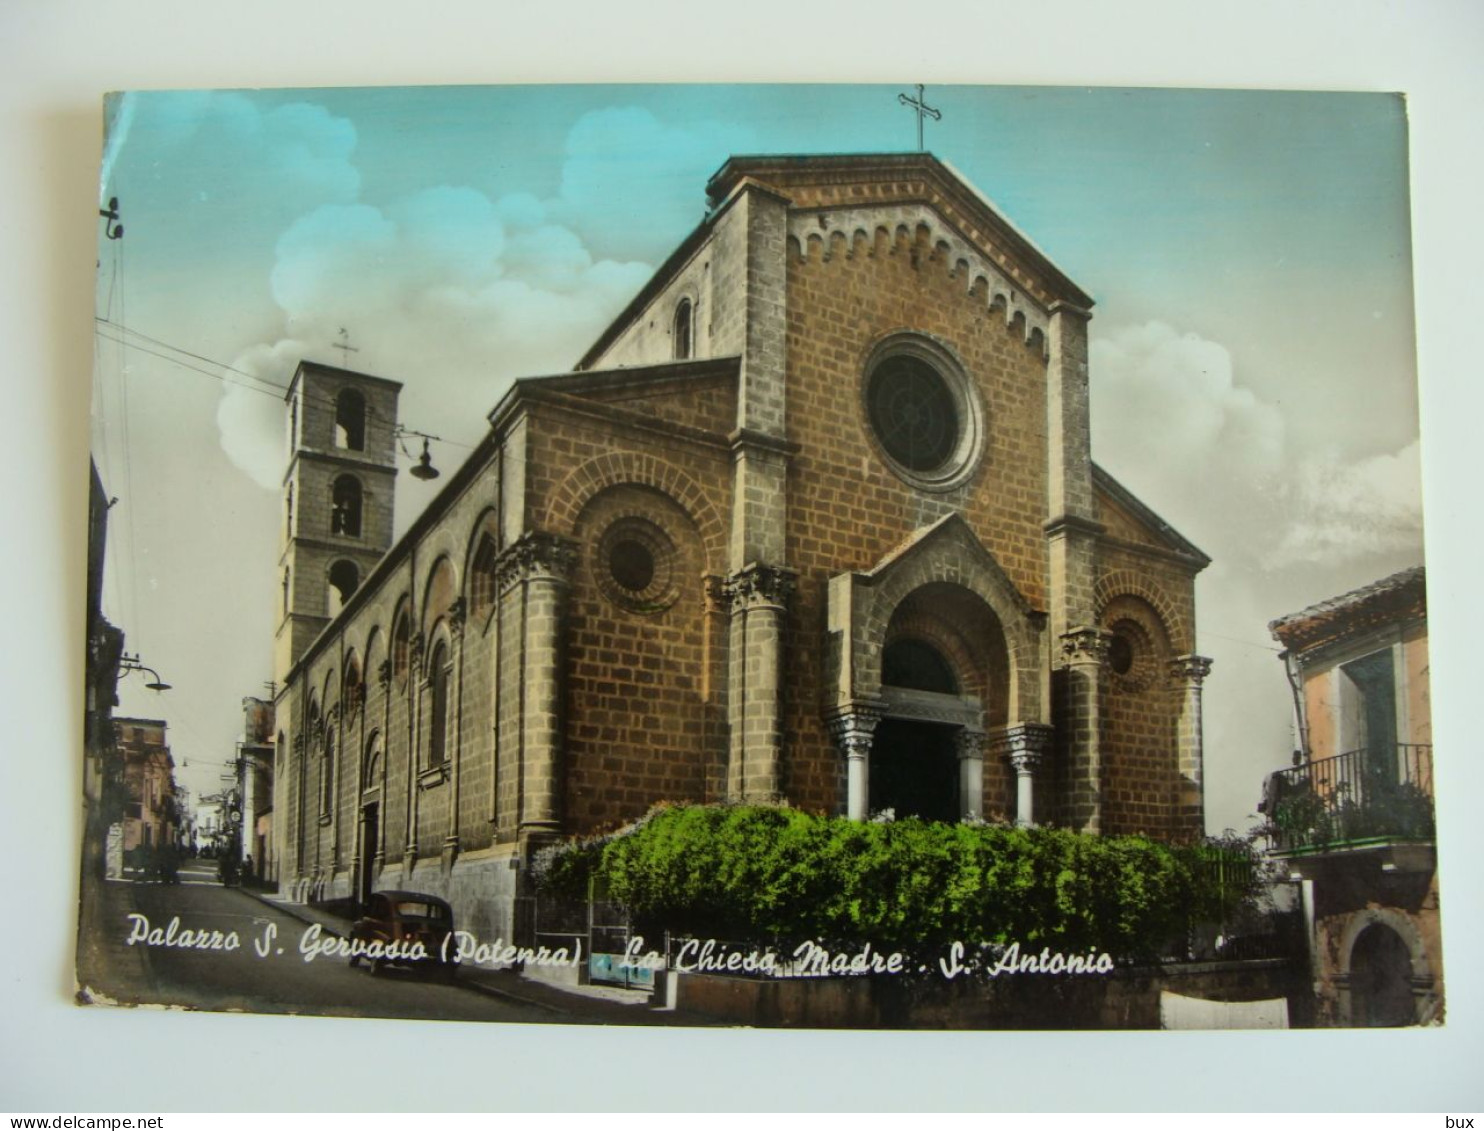 Palazzo S. Gervasio  La Chiesa Madre S. Antonio   POTENZA VIAGGIATA COME DA FOTO ACQUERELLATA - Potenza